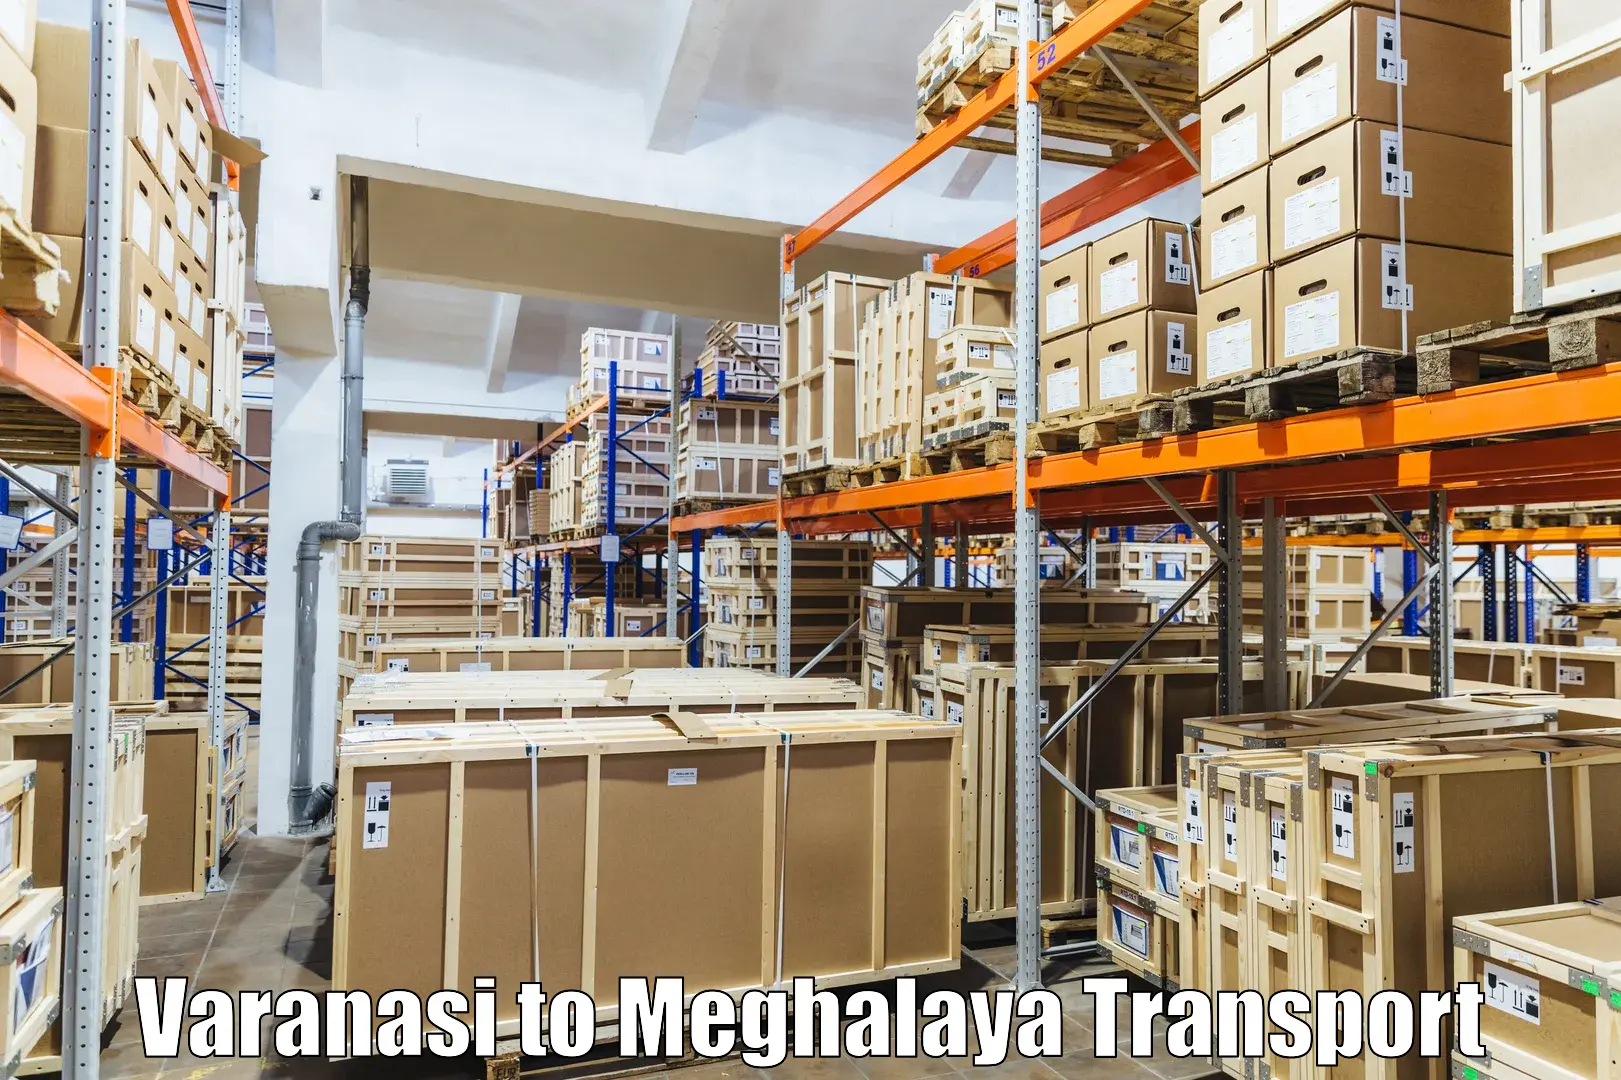 Two wheeler parcel service Varanasi to Meghalaya